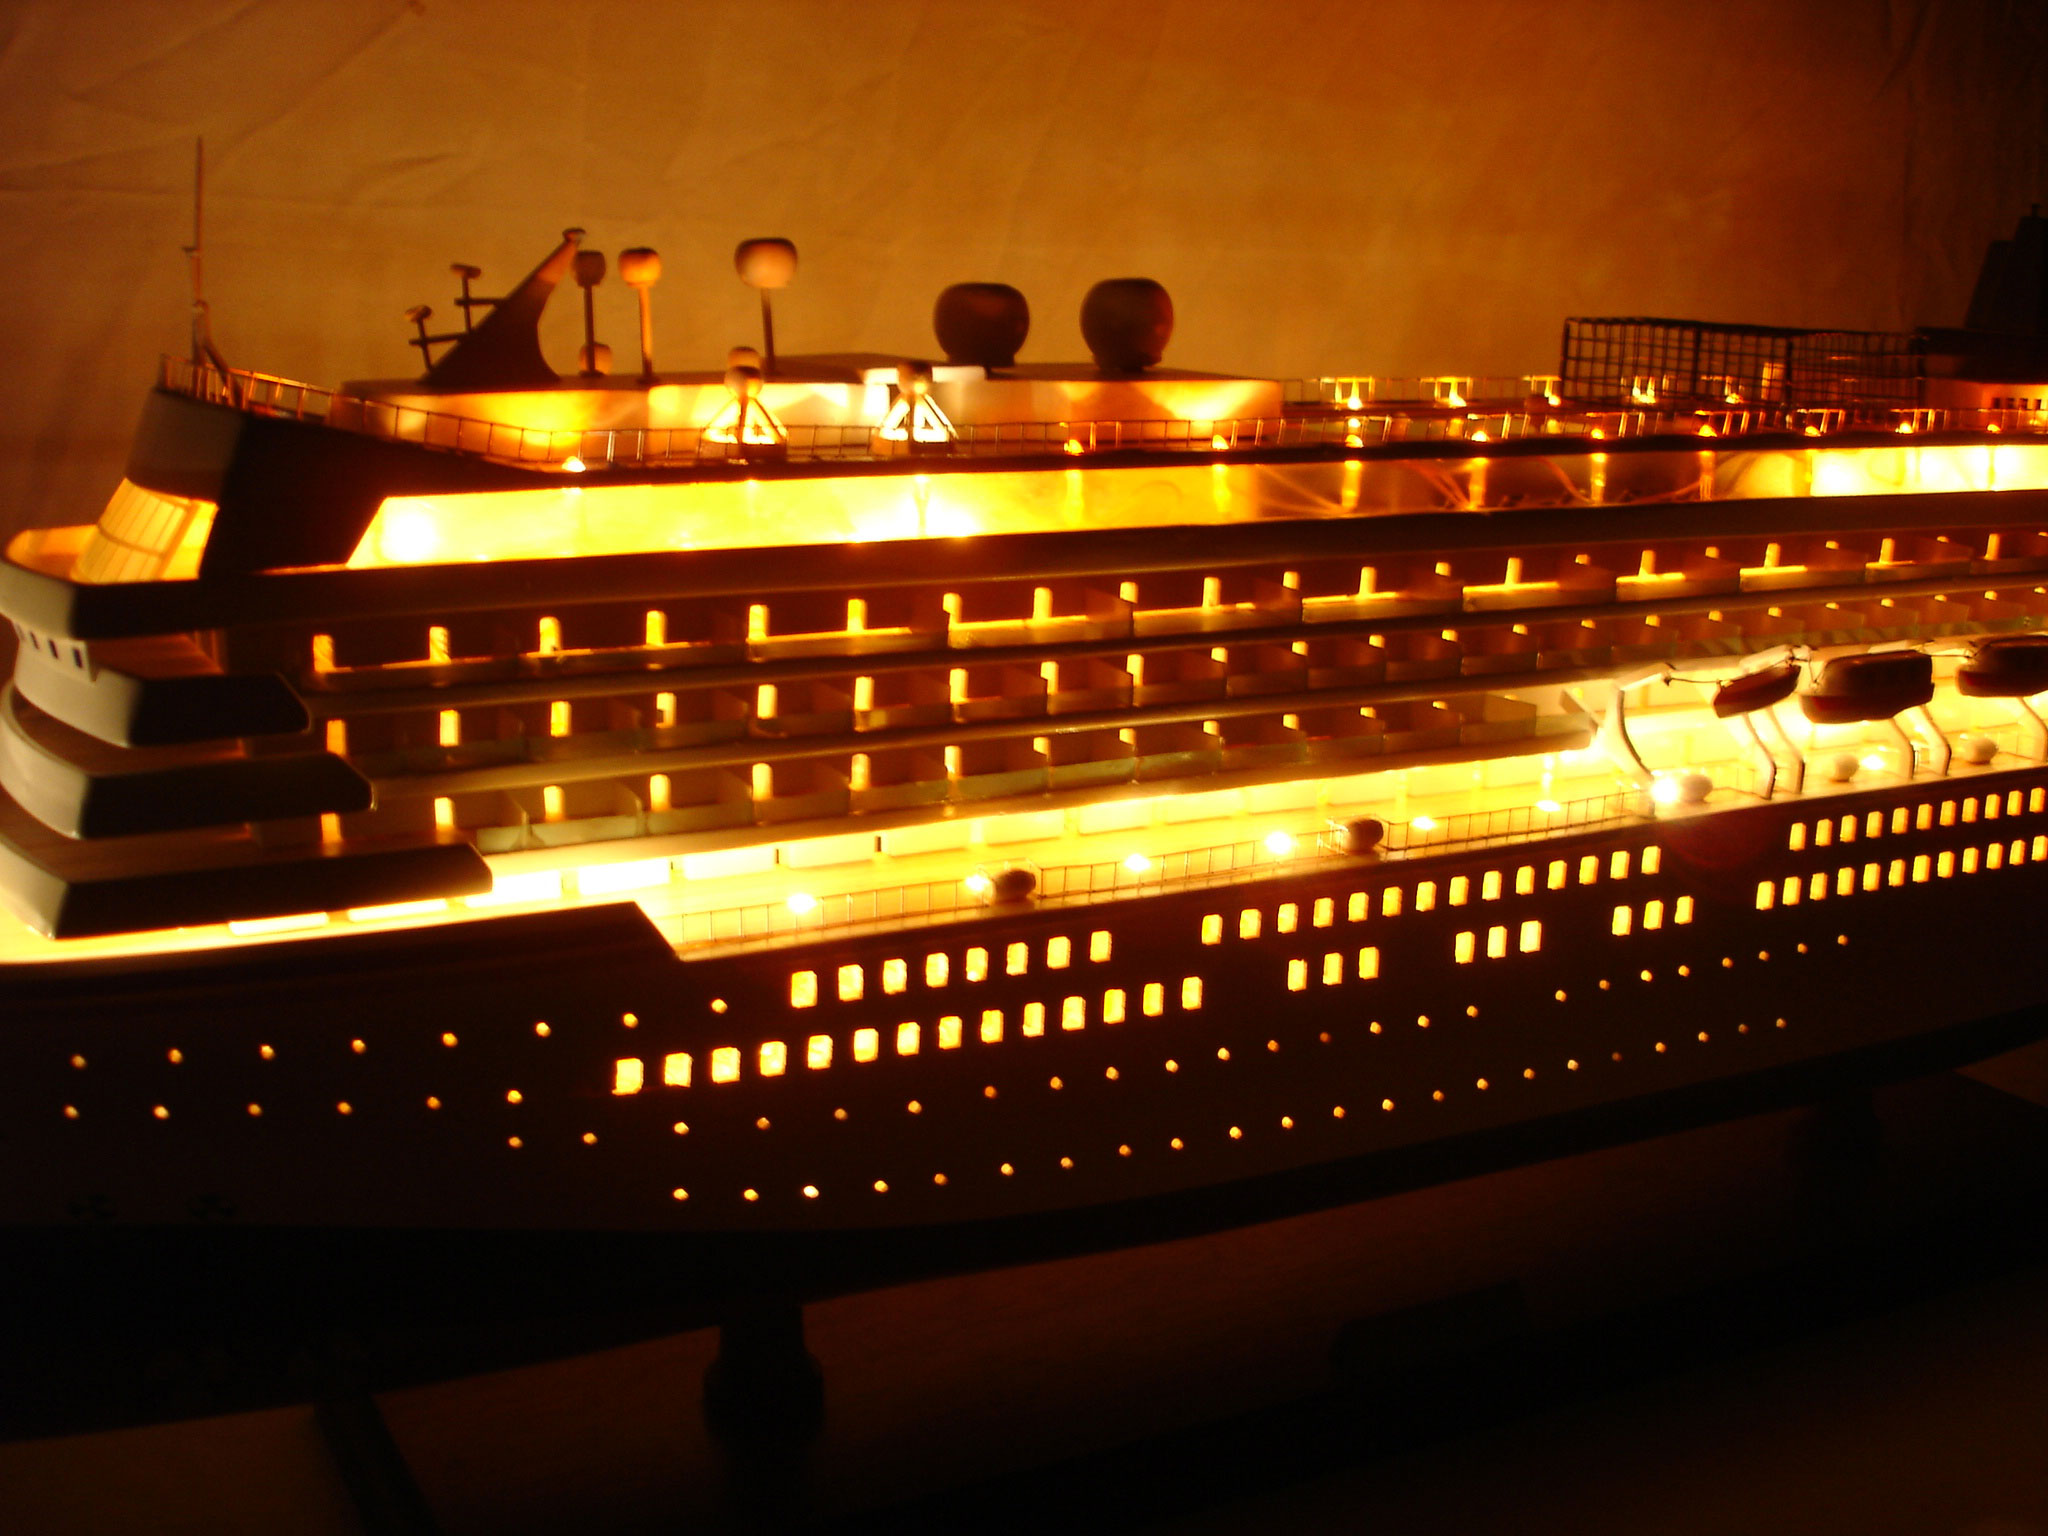 Asuka Ii Boat Model With Light